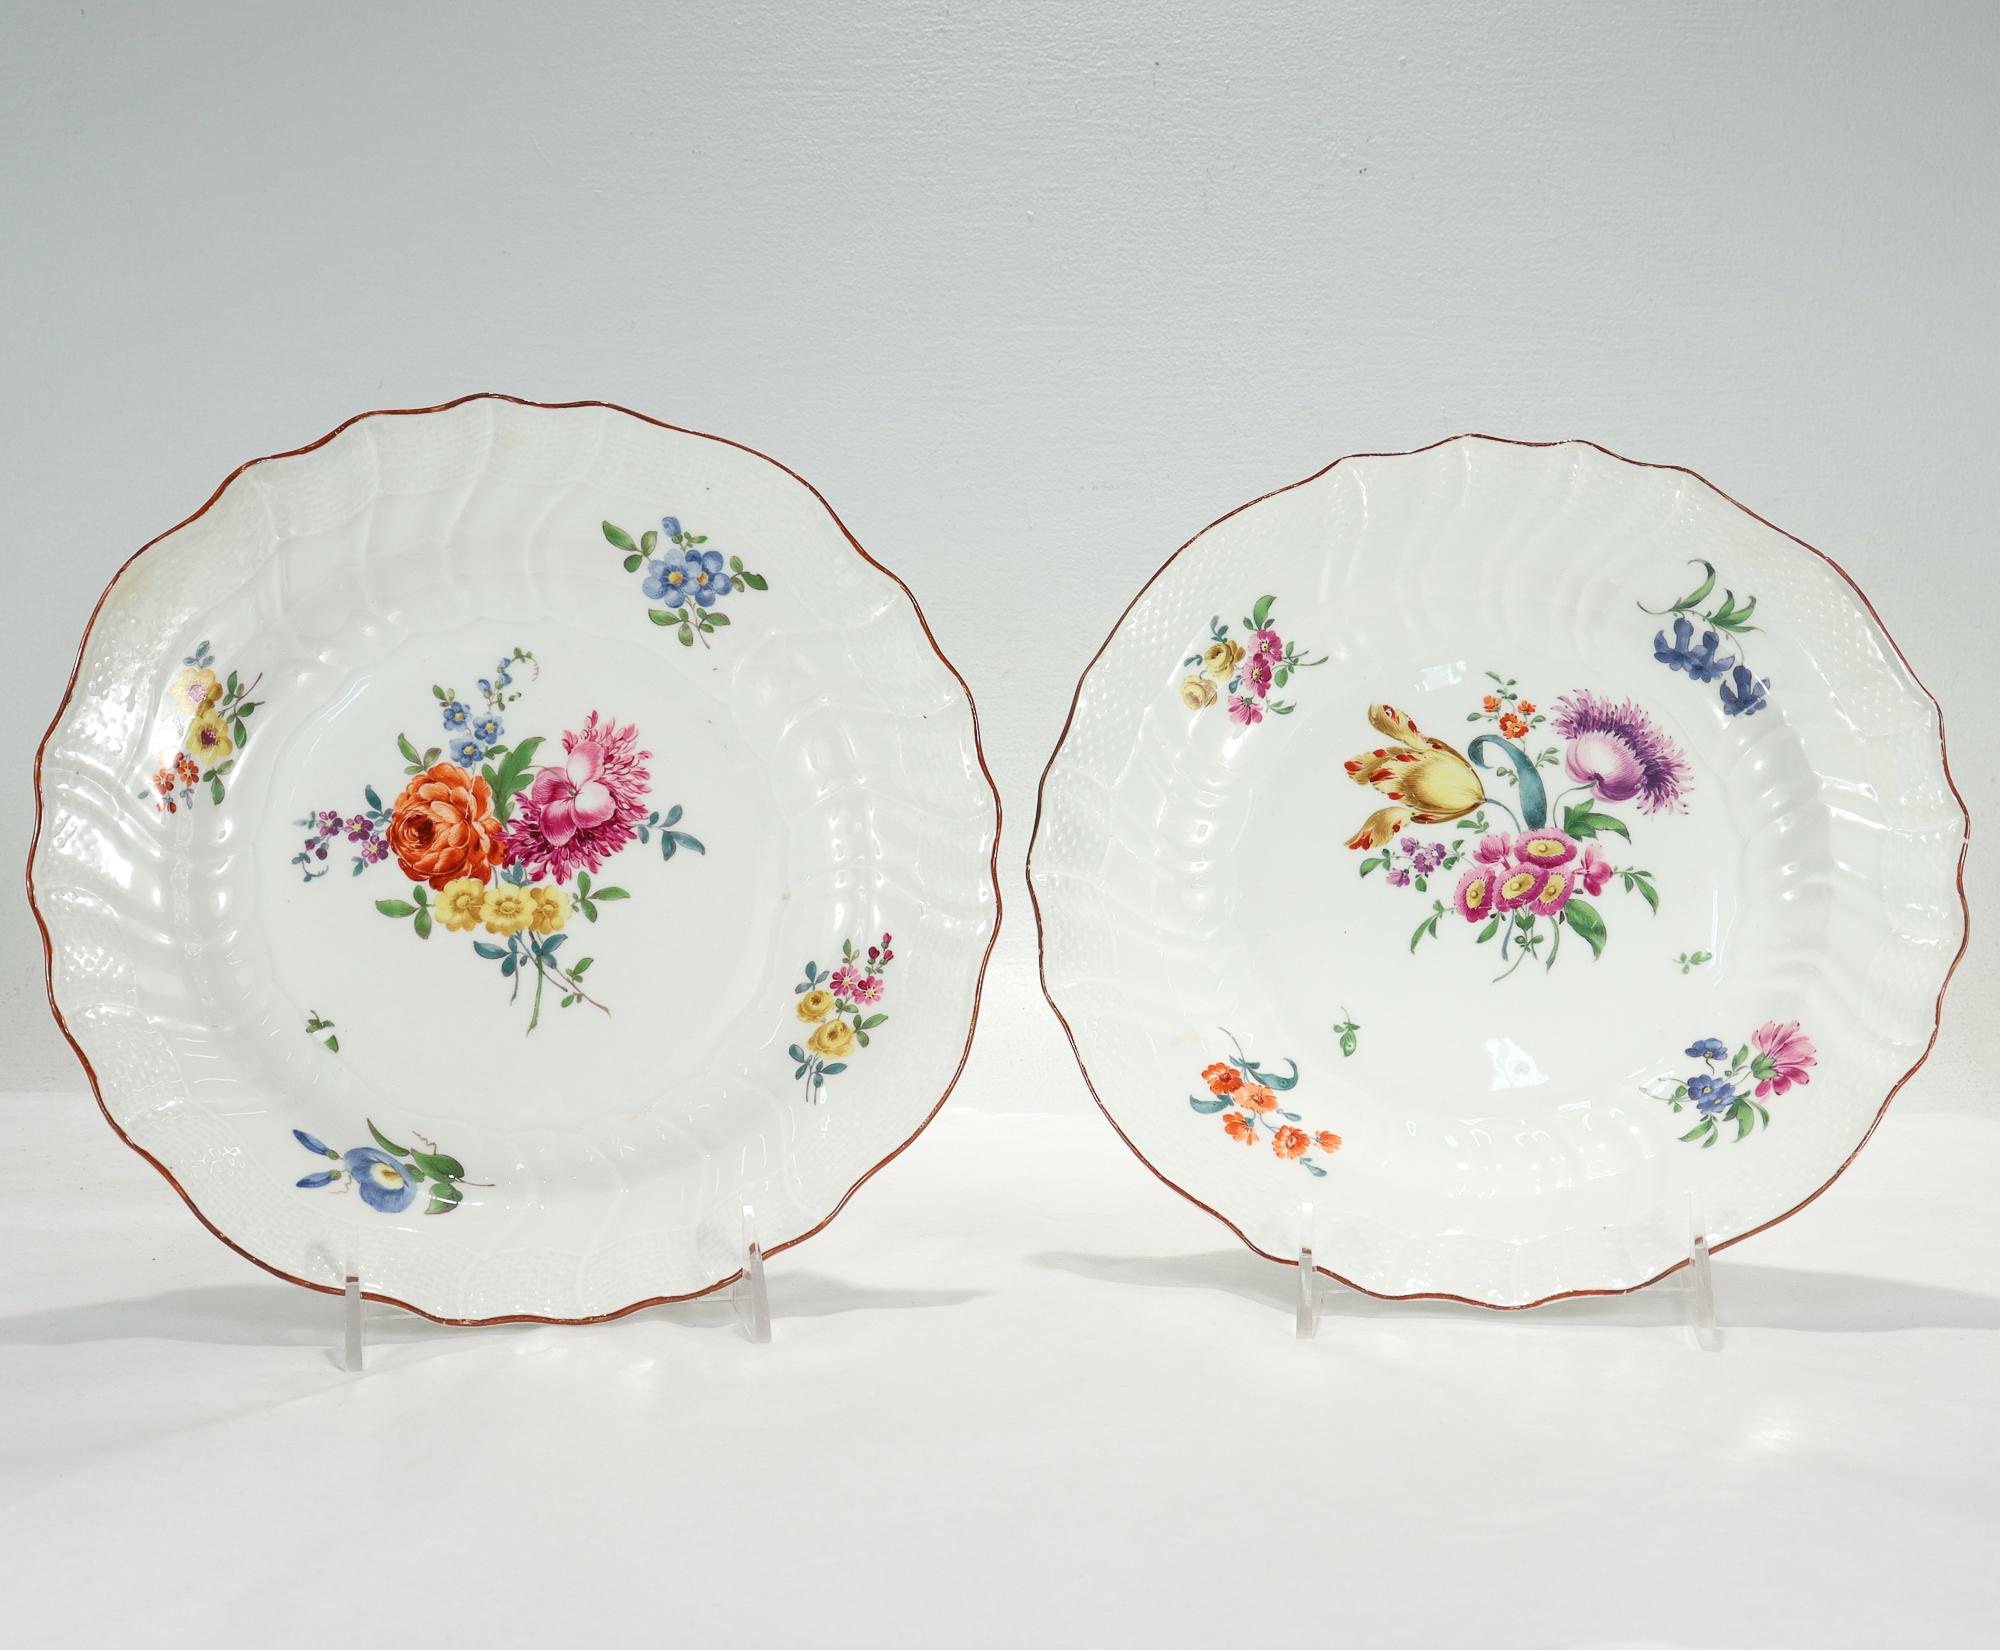 Une belle paire d'assiettes anciennes à motifs Neuozier.

Par la Manufacture royale de porcelaine de Meissen.

Décorée de gerbes de fleurs Deutsche Blumen au centre et sur les côtés, comprenant des roses, des tulipes, des ipomées et d'autres